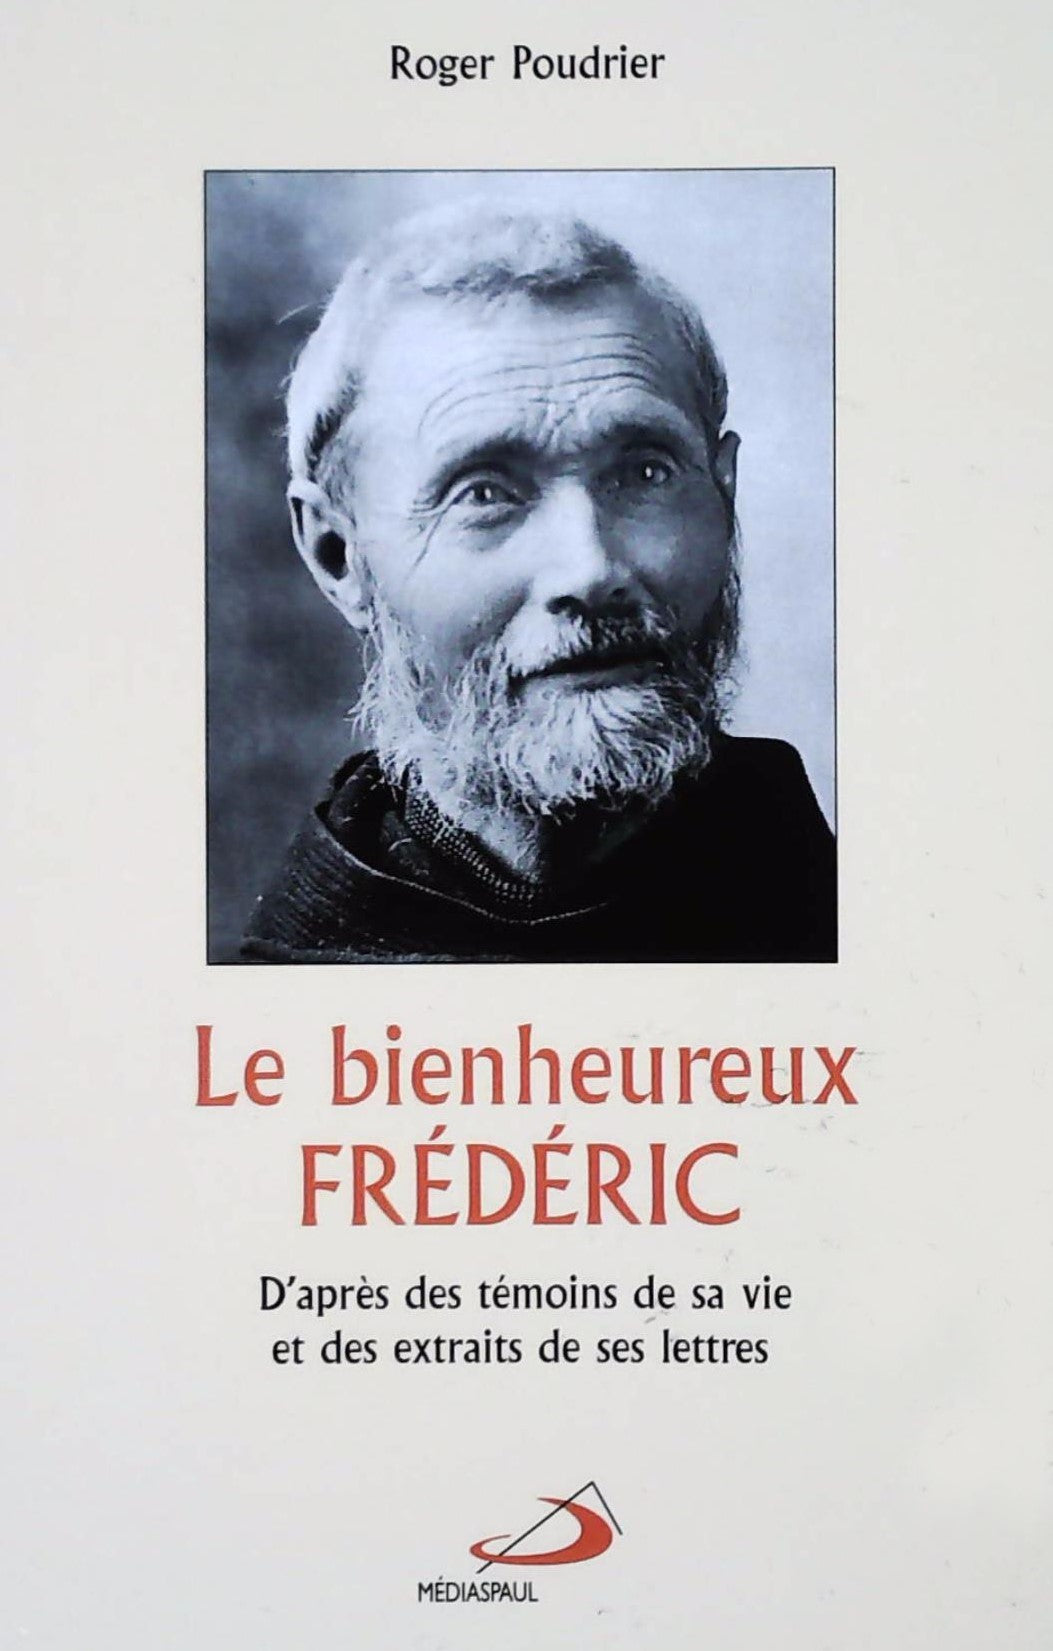 Livre ISBN 2894204590 Le bienheureux Frédéric (Roger Poudrier)